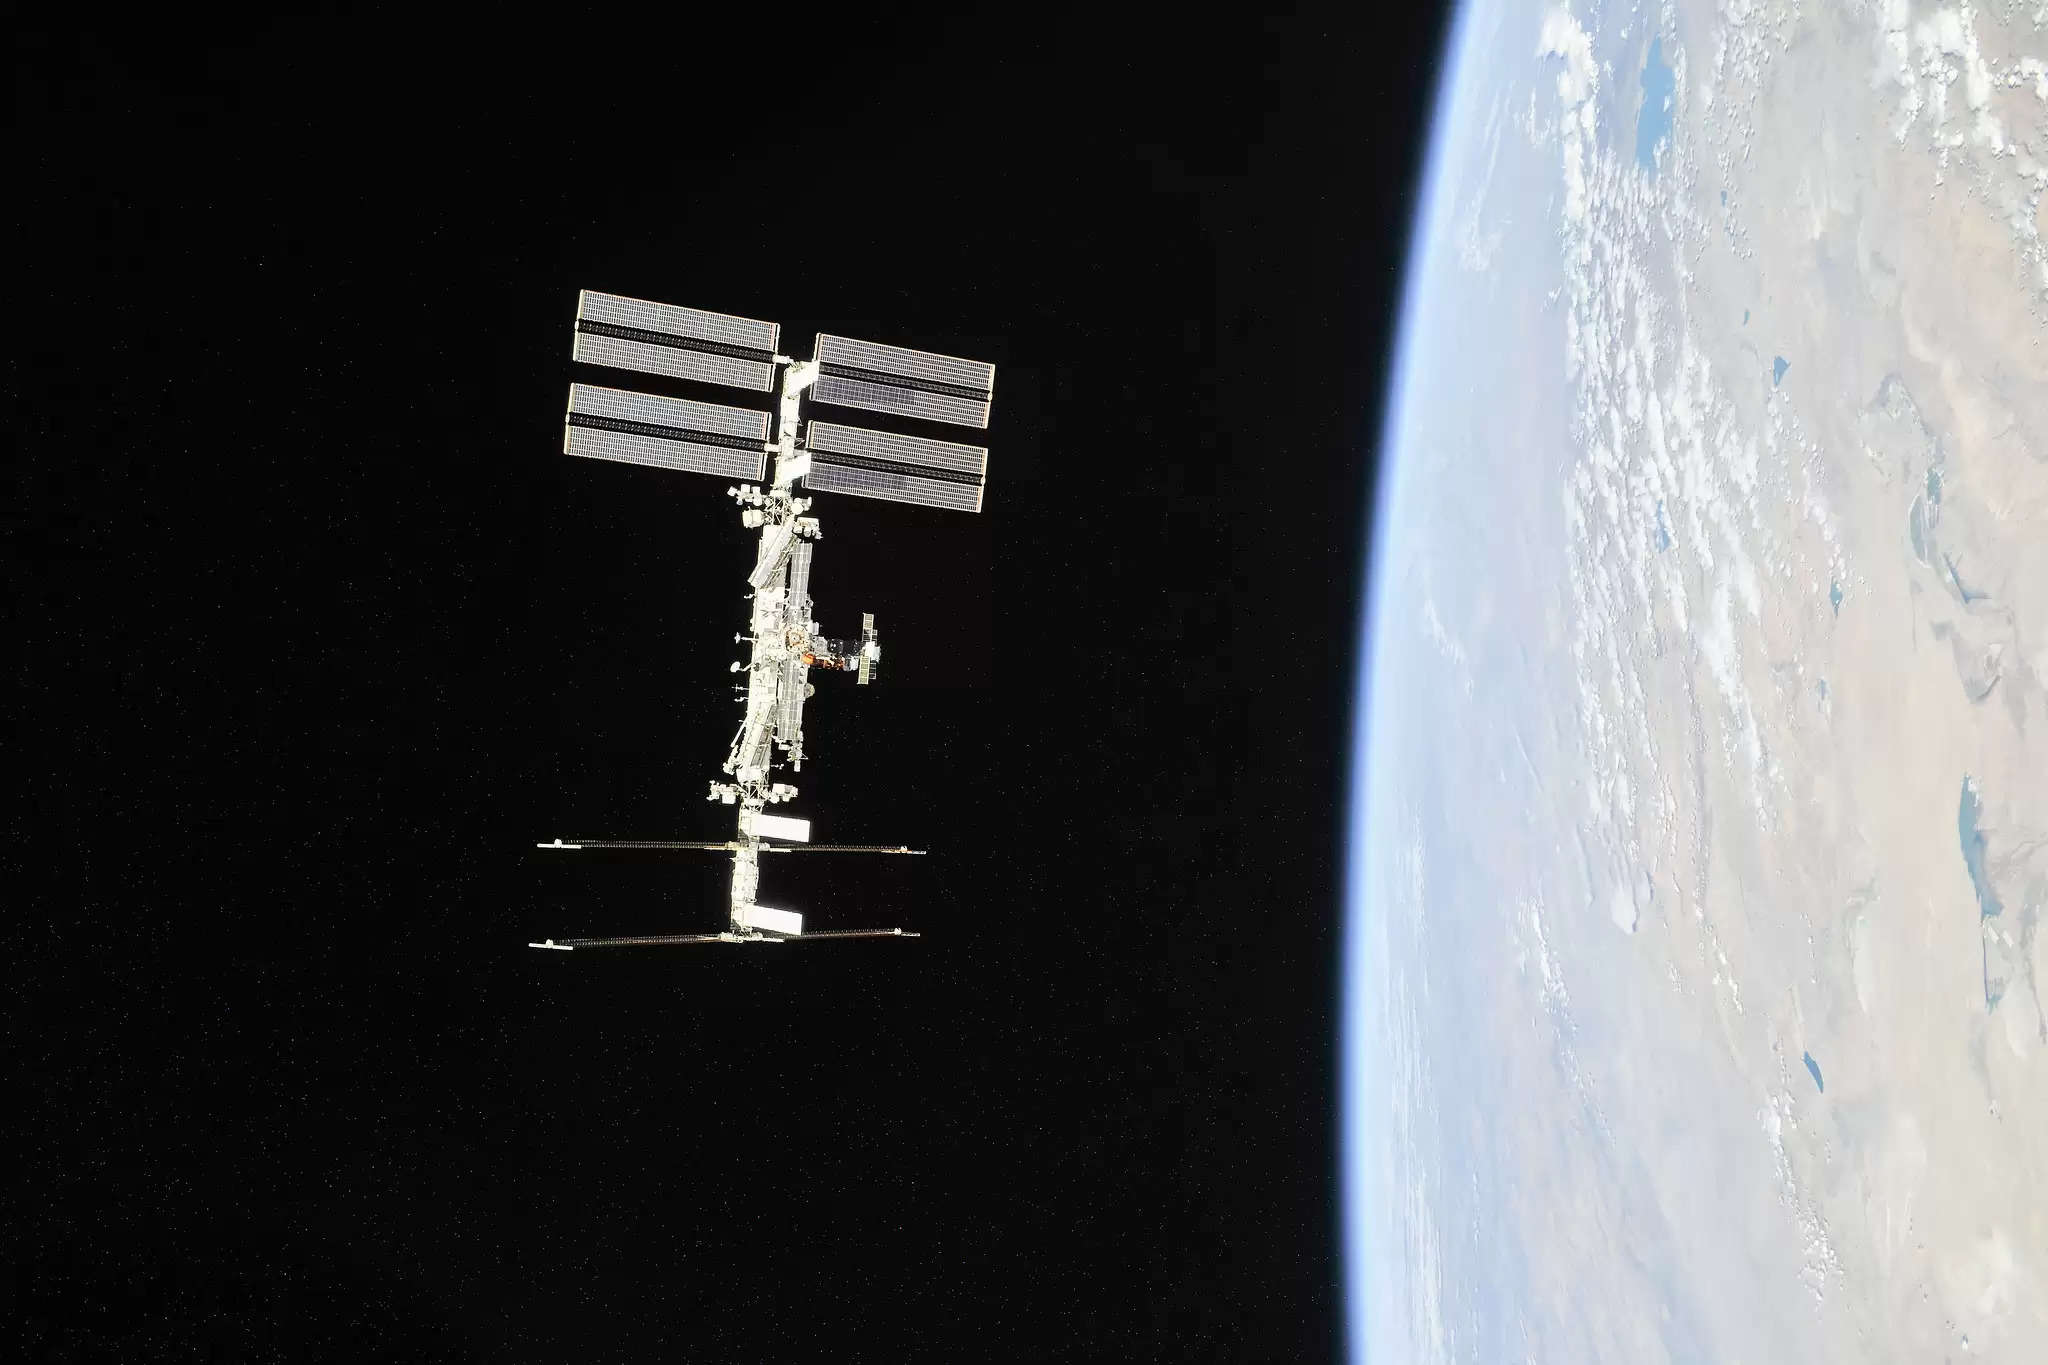 Space स्टेशन के लिए पहले निजी अंतरिक्ष यात्री मिशन के लिए Axiom के साथ नासा की साझेदारी,रिपोर्ट